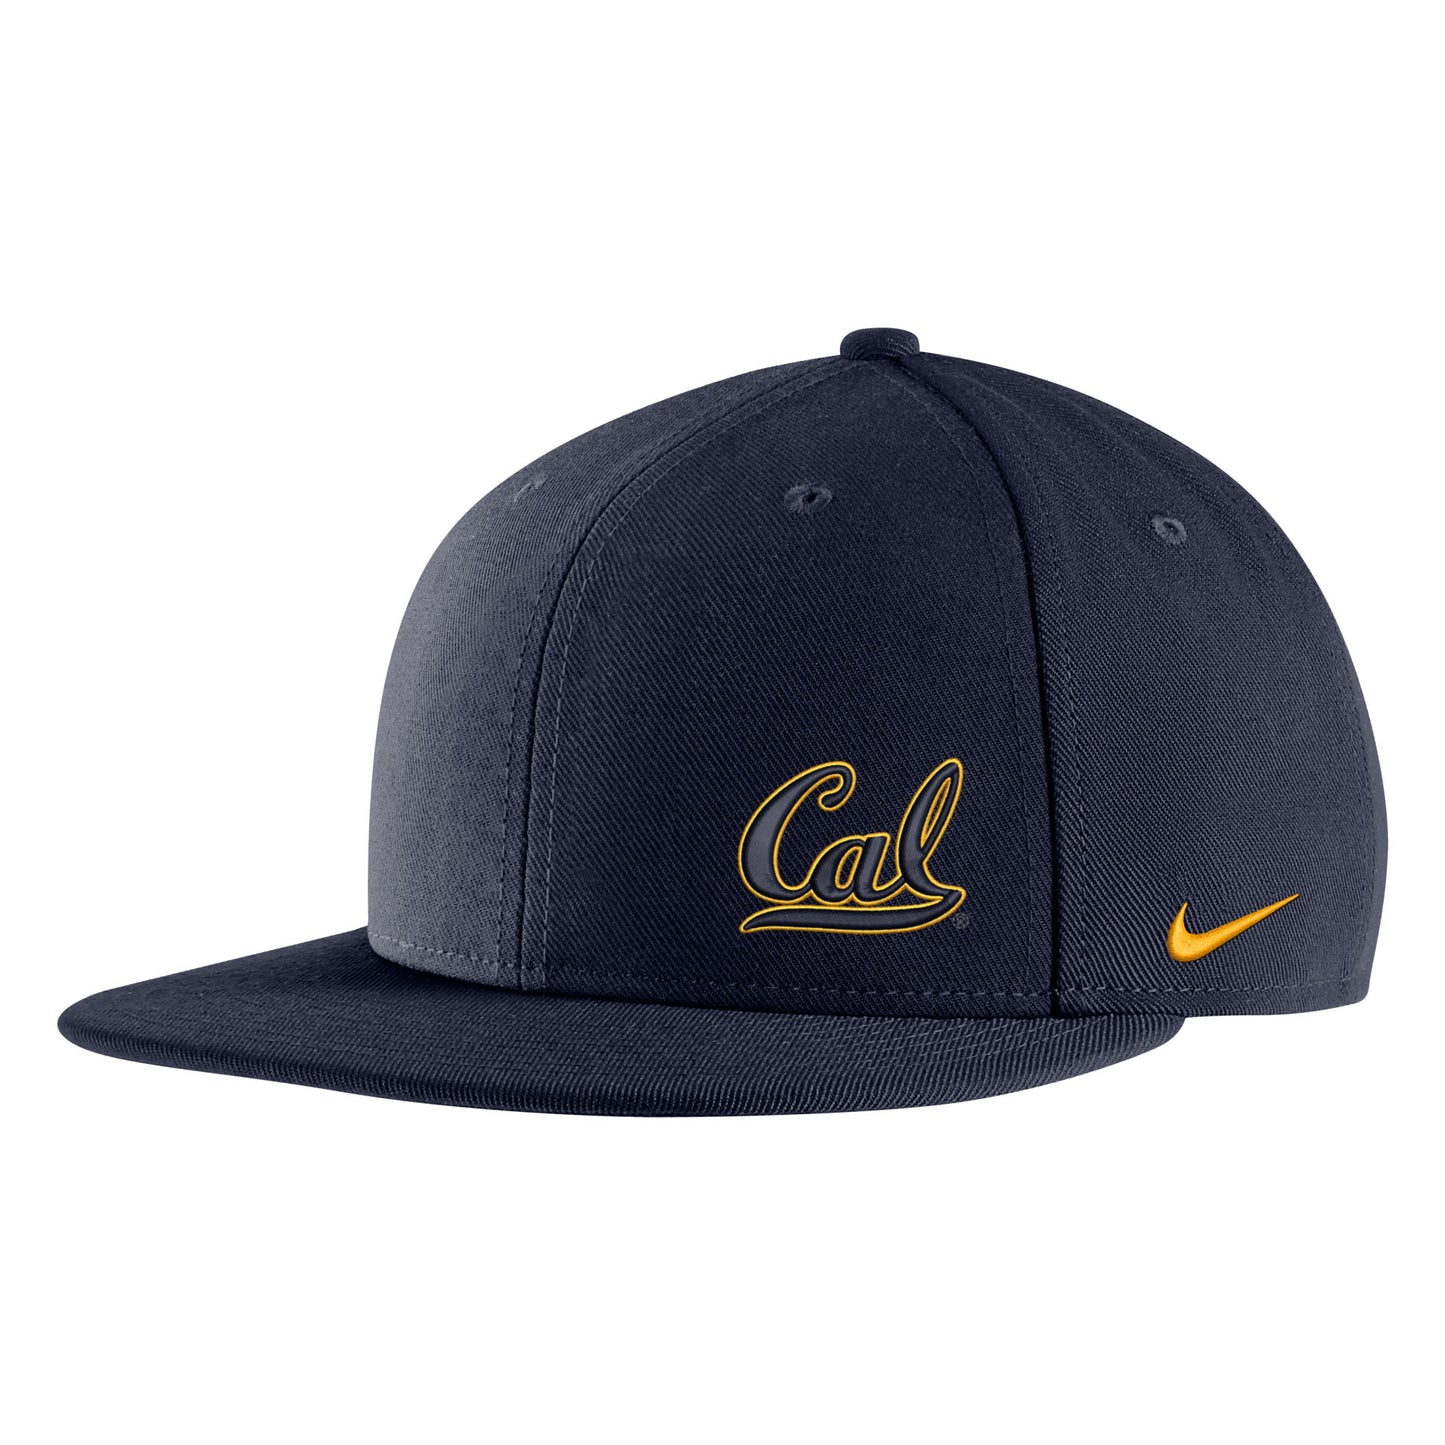 U.C. Berkeley script Cal Nike Pro Flatbill Hat-Navy-Shop College Wear